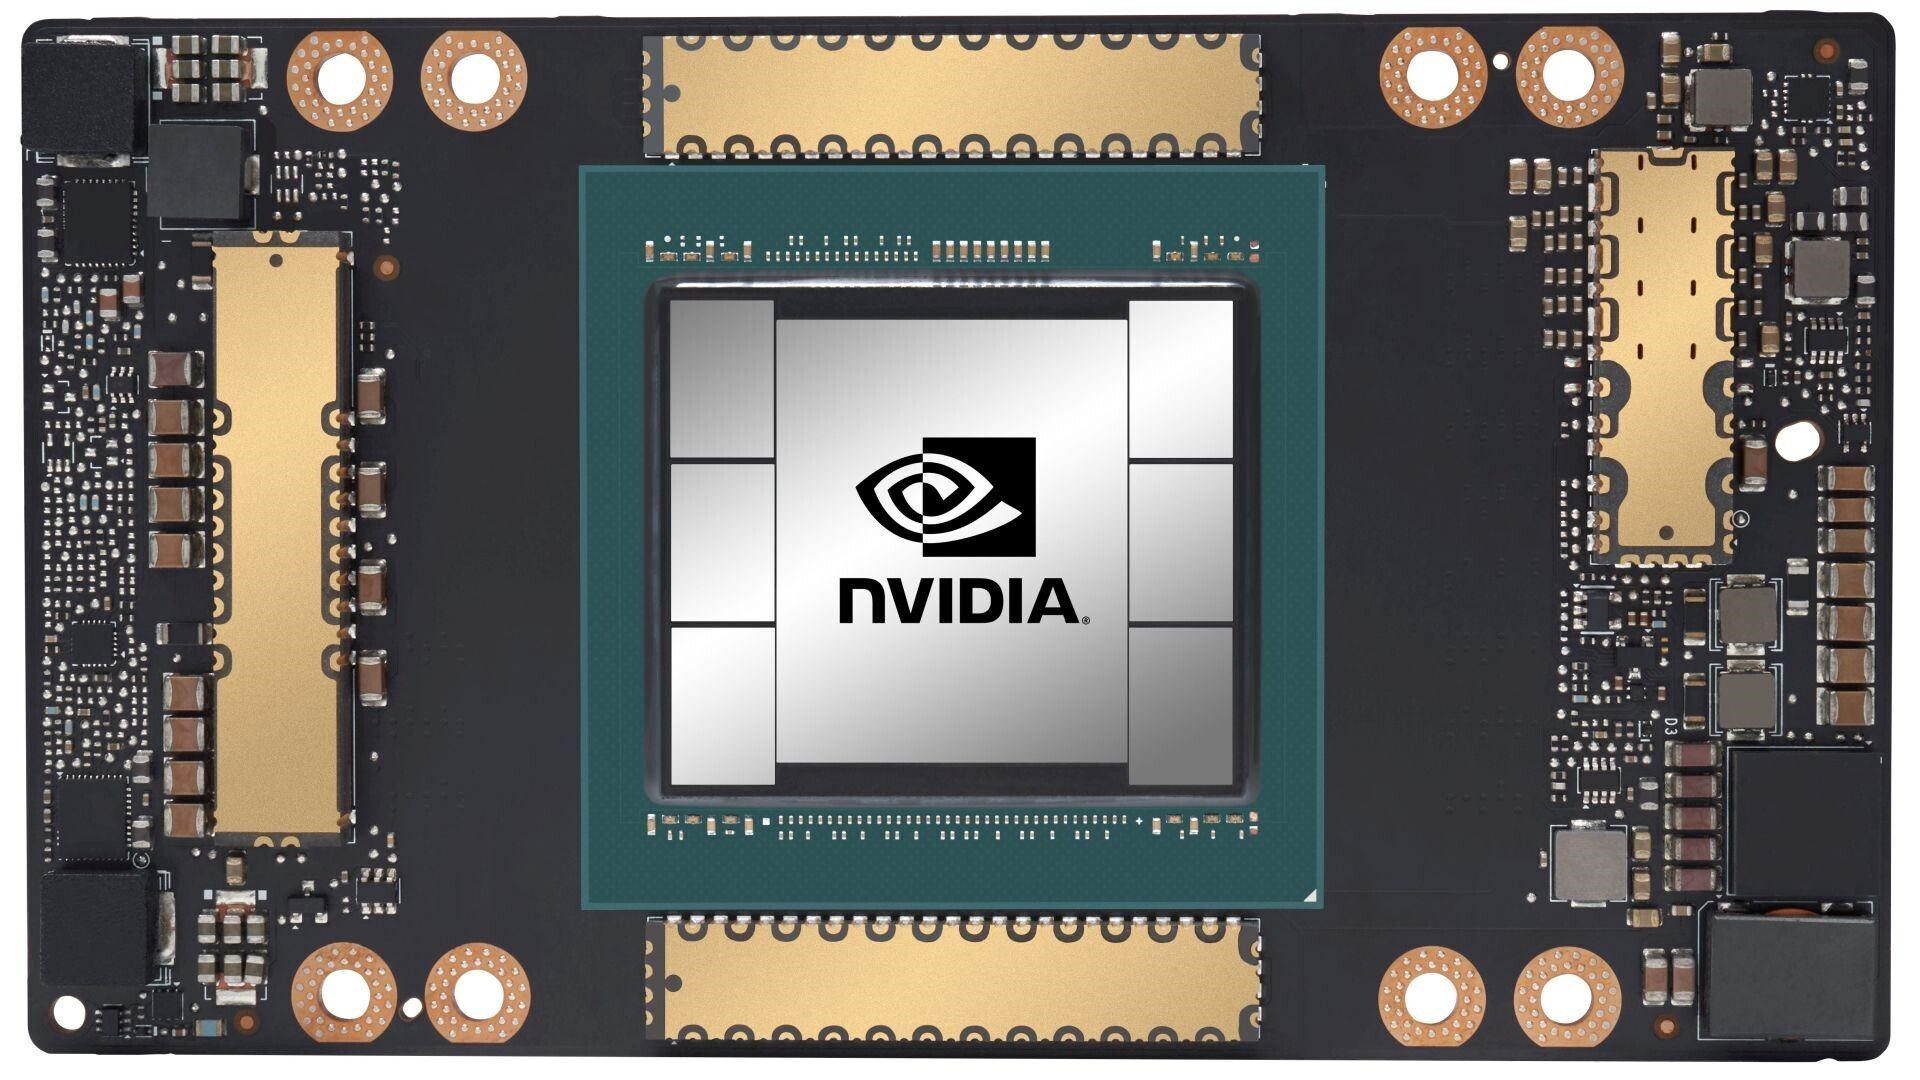 Berichten zufolge plant Nvidia, Technologie an Huawei zu verkaufen – Nvidia und Qualcomm könnten durch den US-Plan, weitere Exporte an Huawei zu blockieren, beeinträchtigt werden